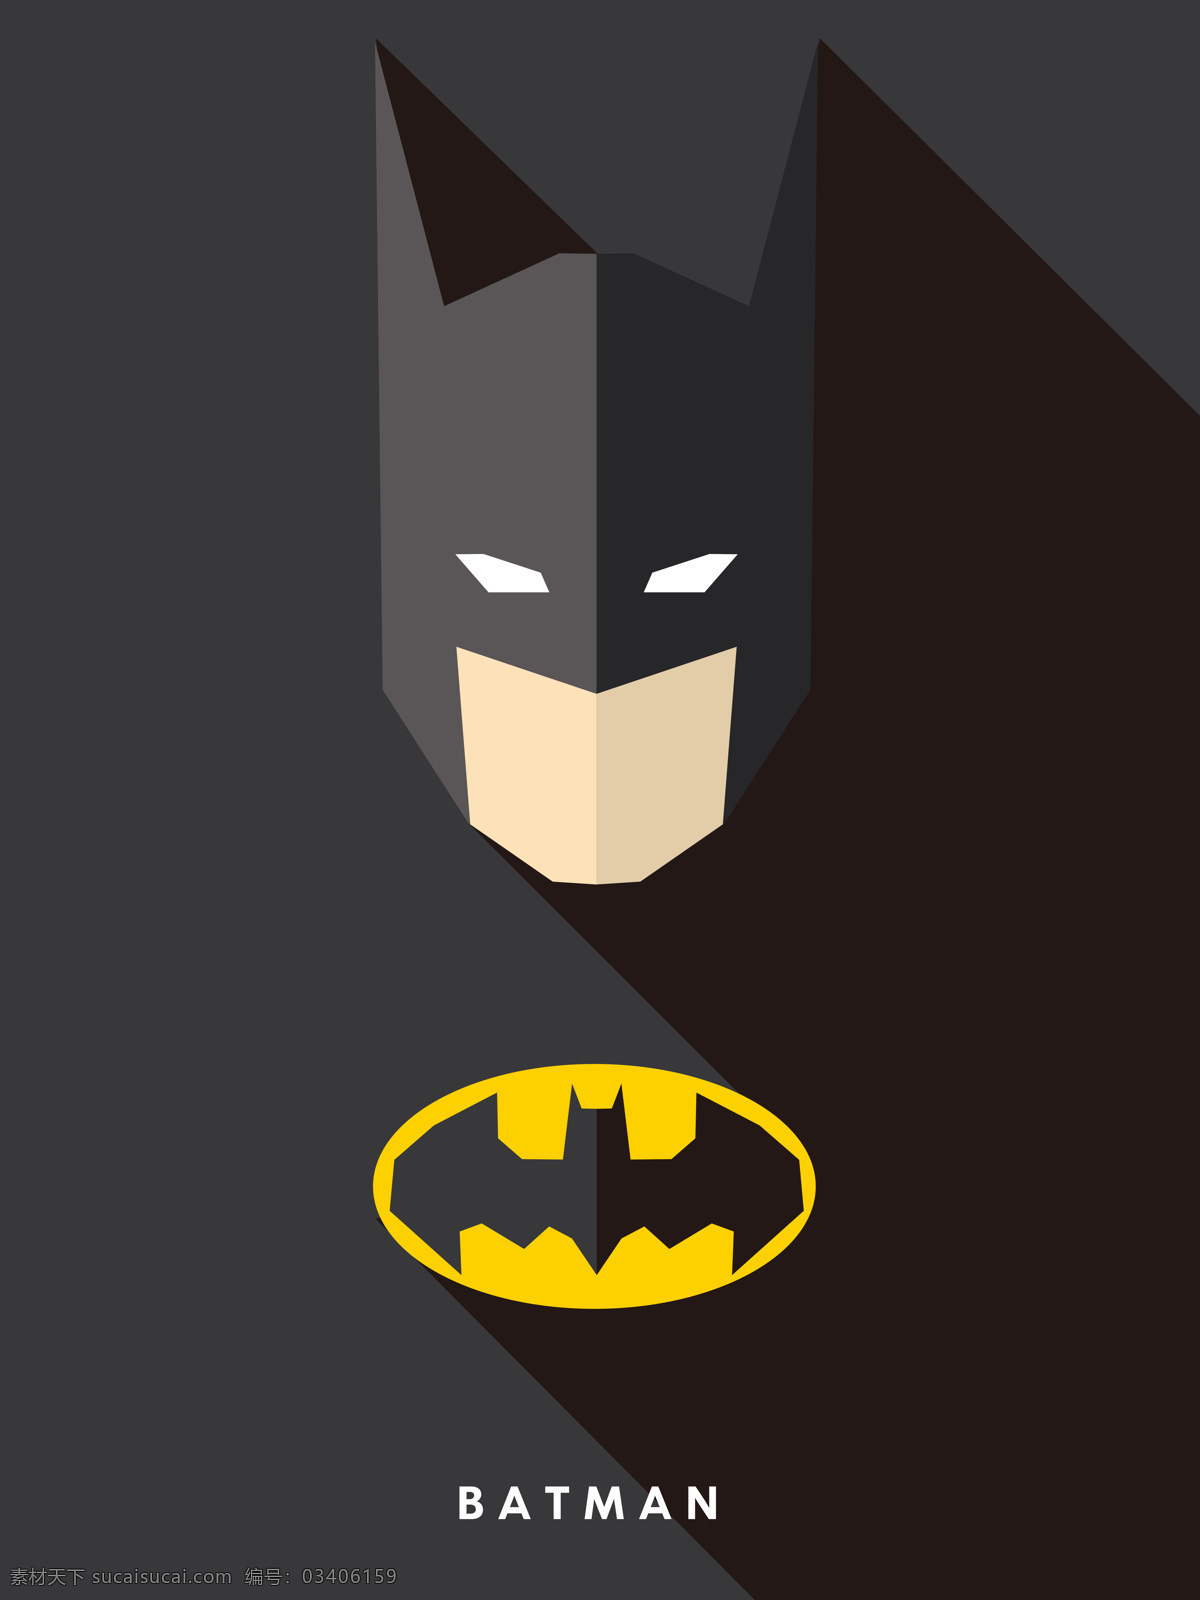 蝙蝠侠 batman dc 超级英雄 漫画英雄 装饰画 高清素材 文化艺术 影视娱乐